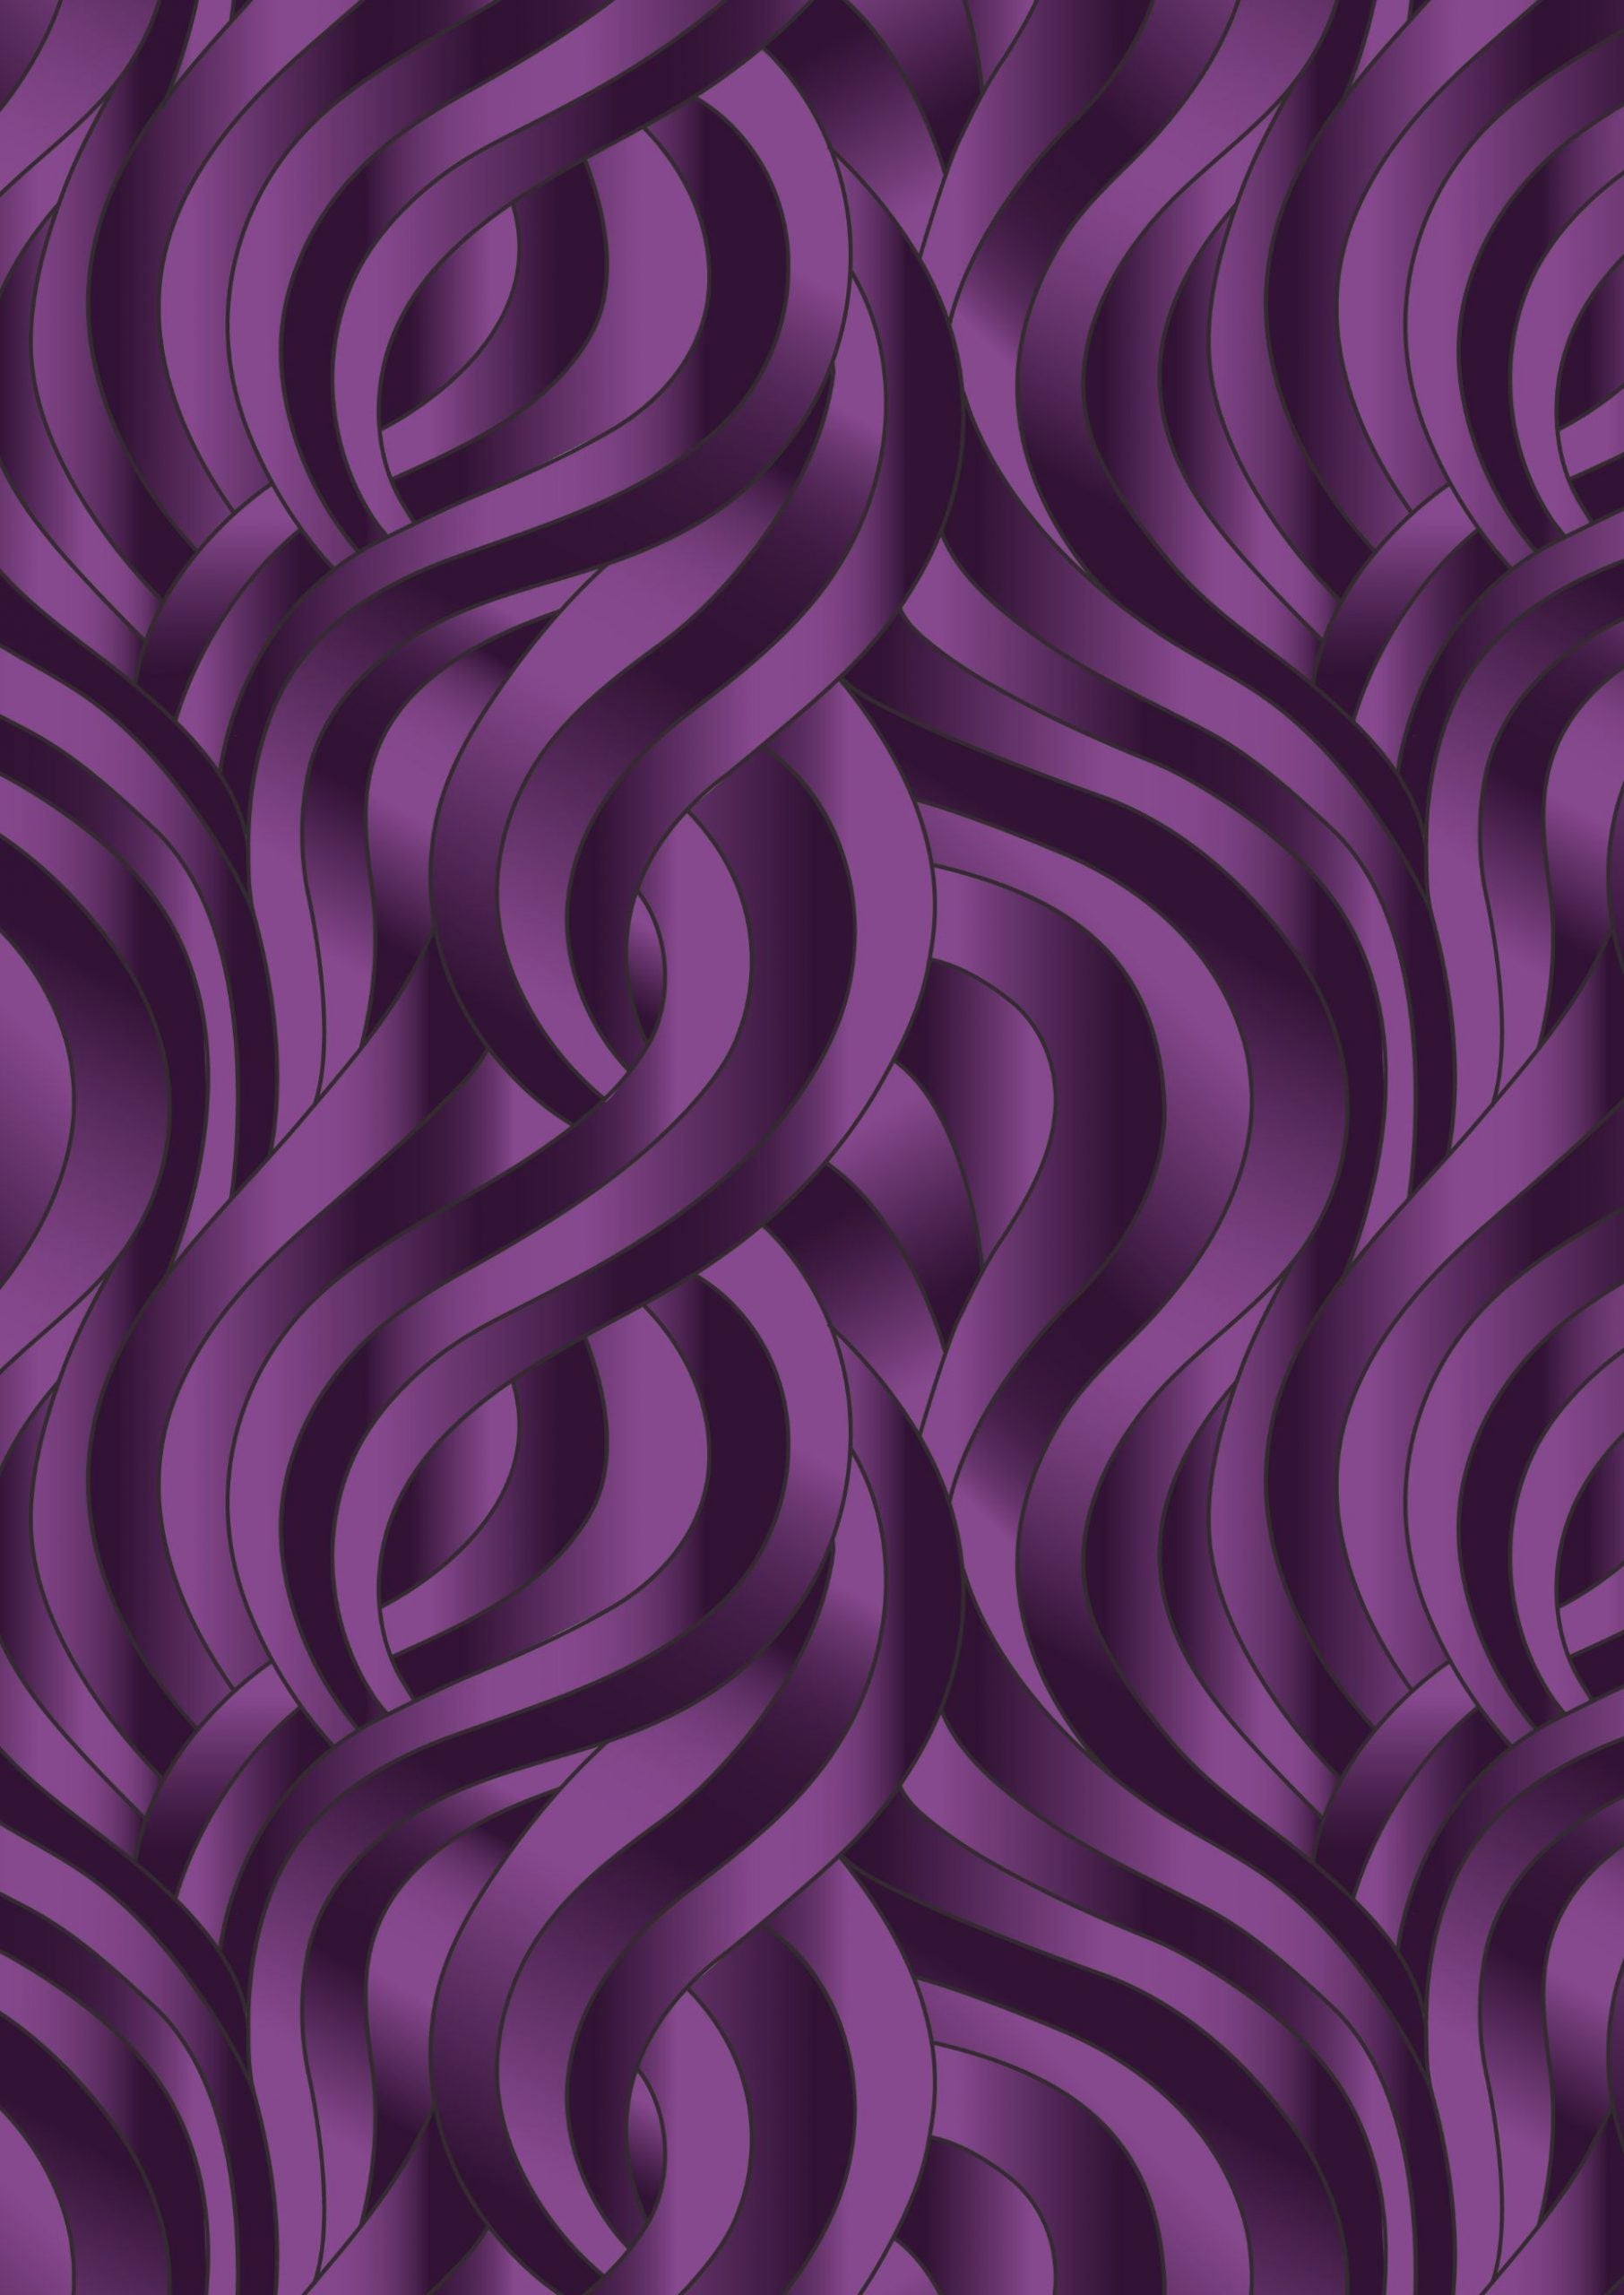 Reflections Dk. Purple Swirls